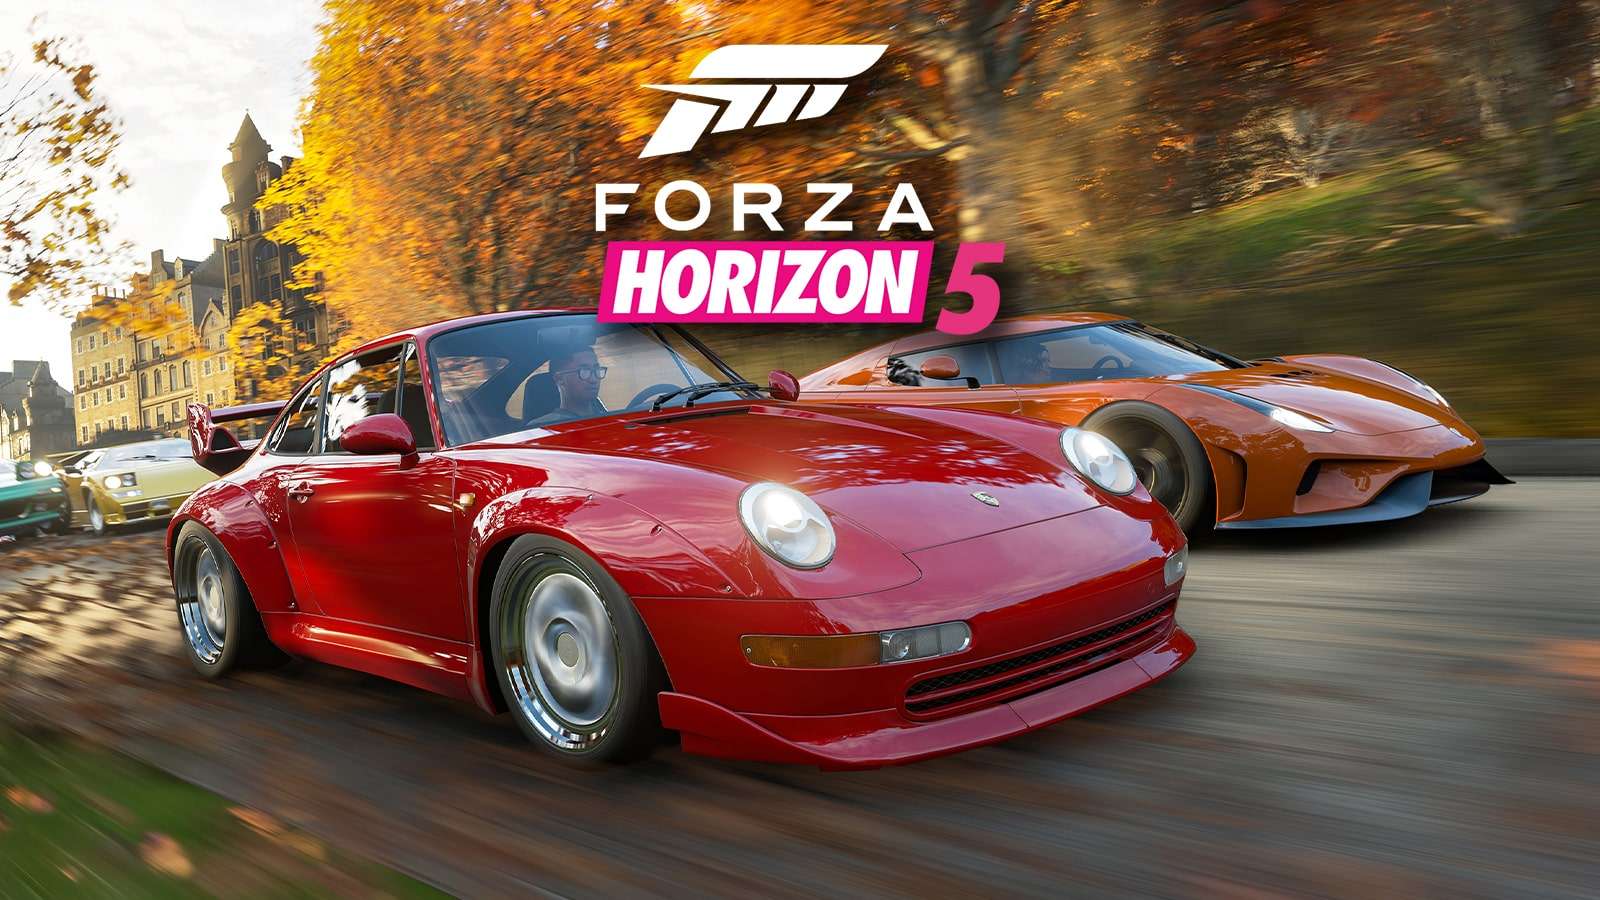 Forza Horizon 5 cars speeding along a road